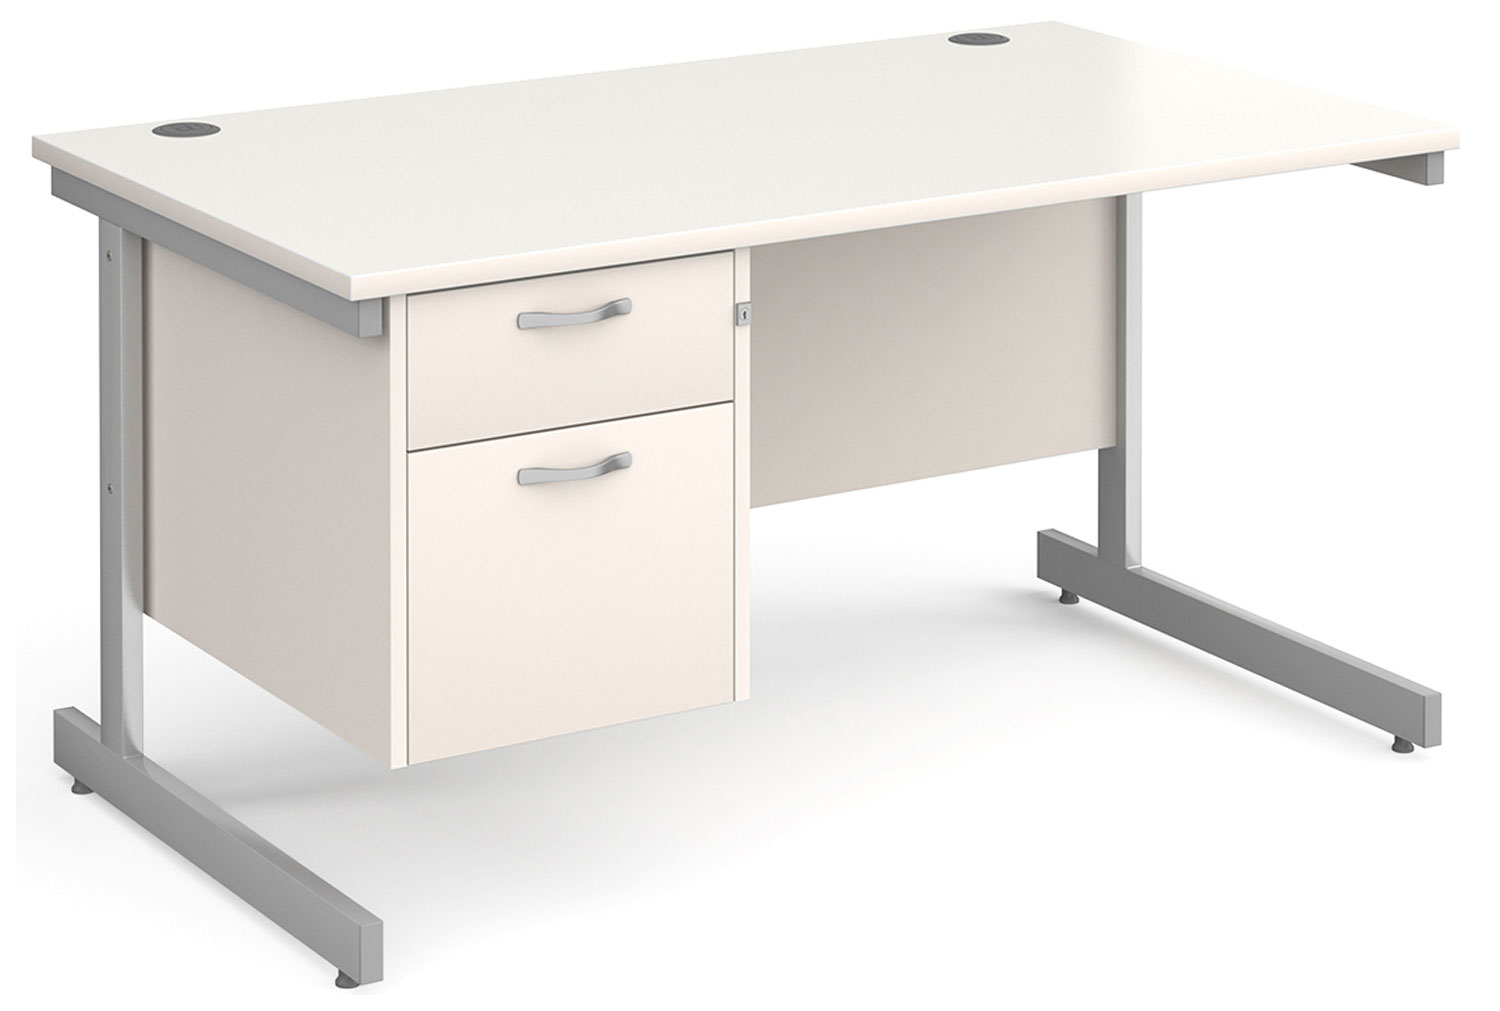 Tully I Rectangular Office Desk 2 Drawers, 140wx80dx73h (cm), White, Fully Installed